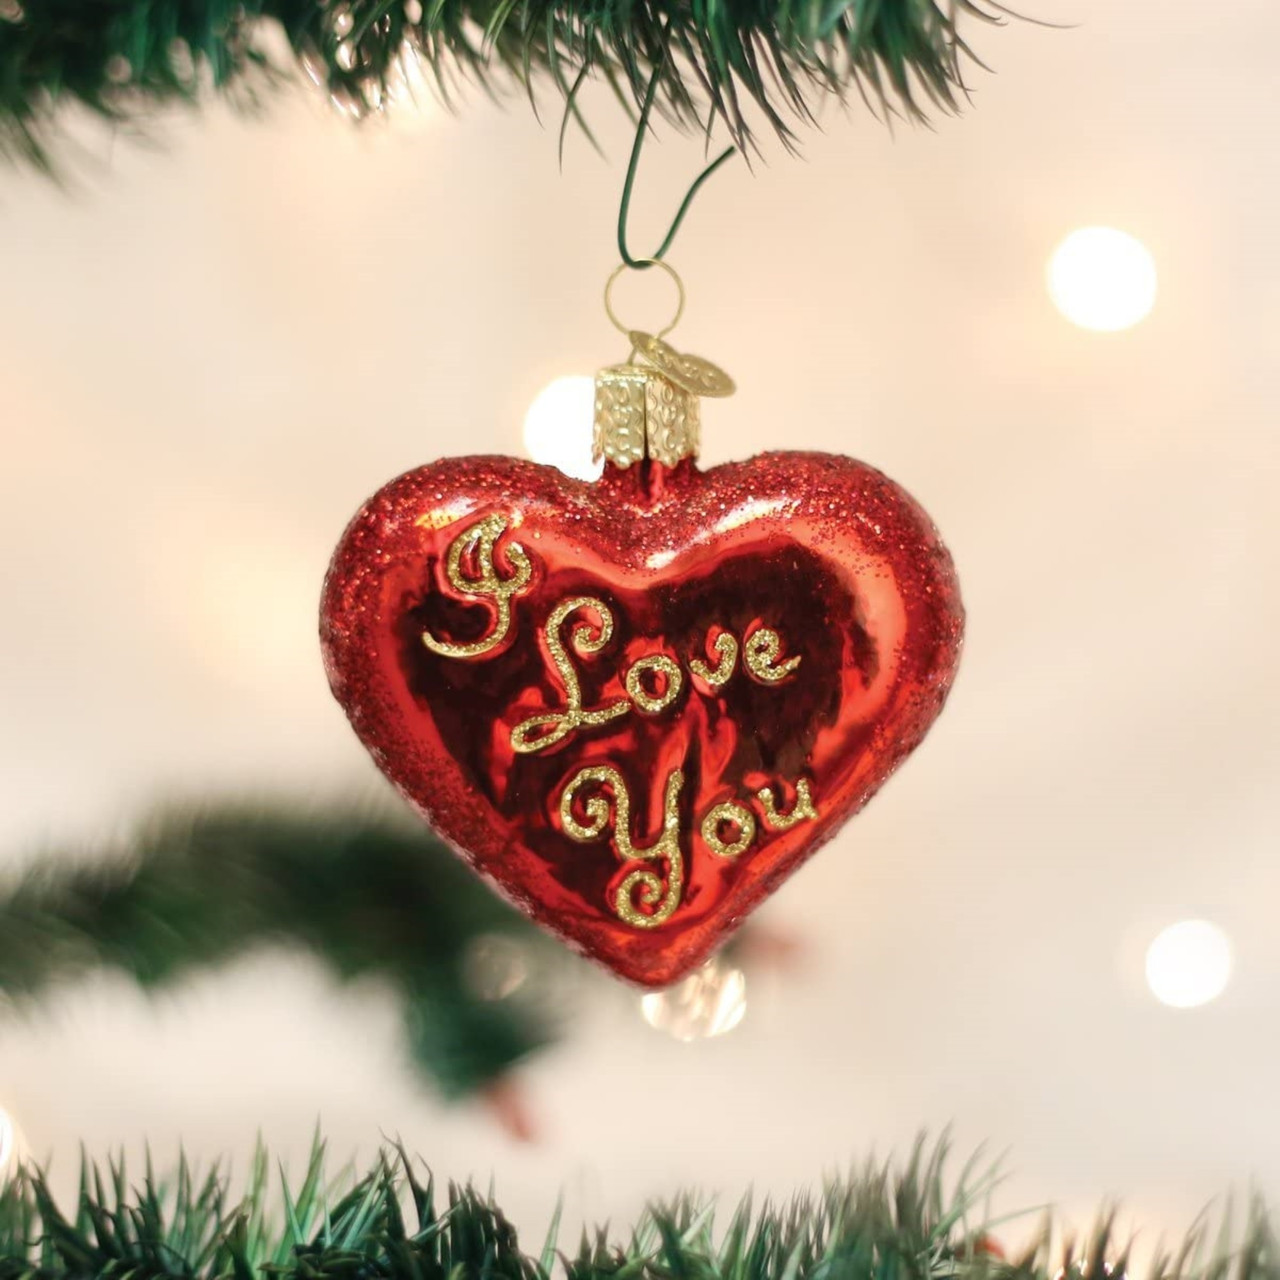 I Love You Glass Heart Christmas Ornament 